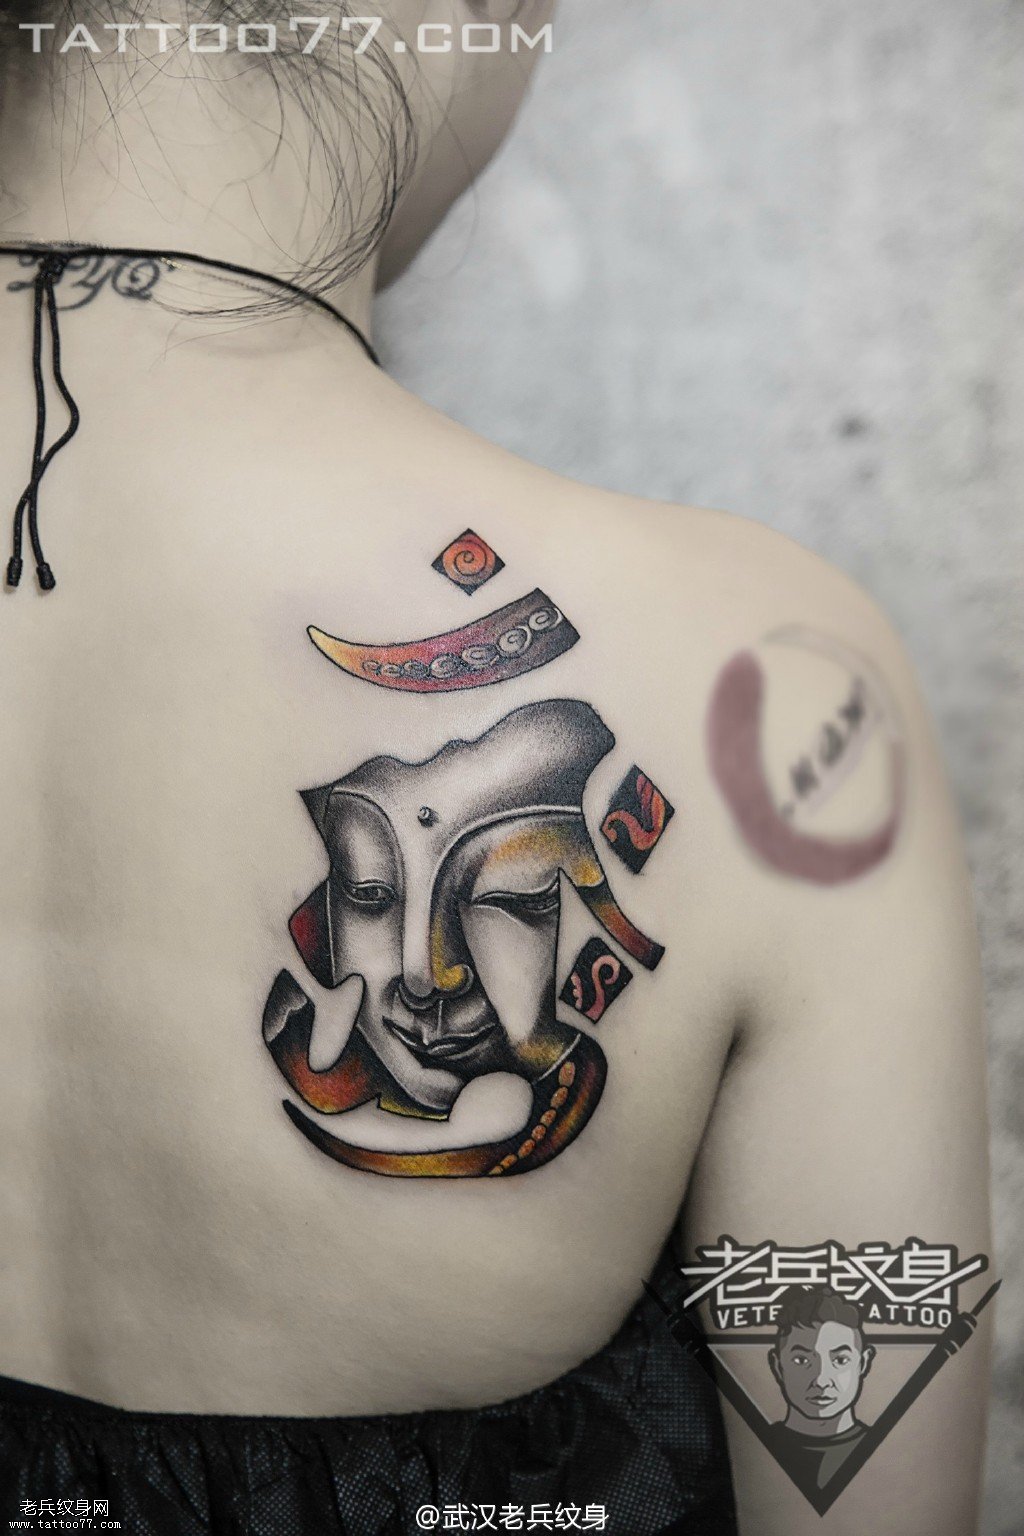 肩胛梵文佛头纹身图案作品